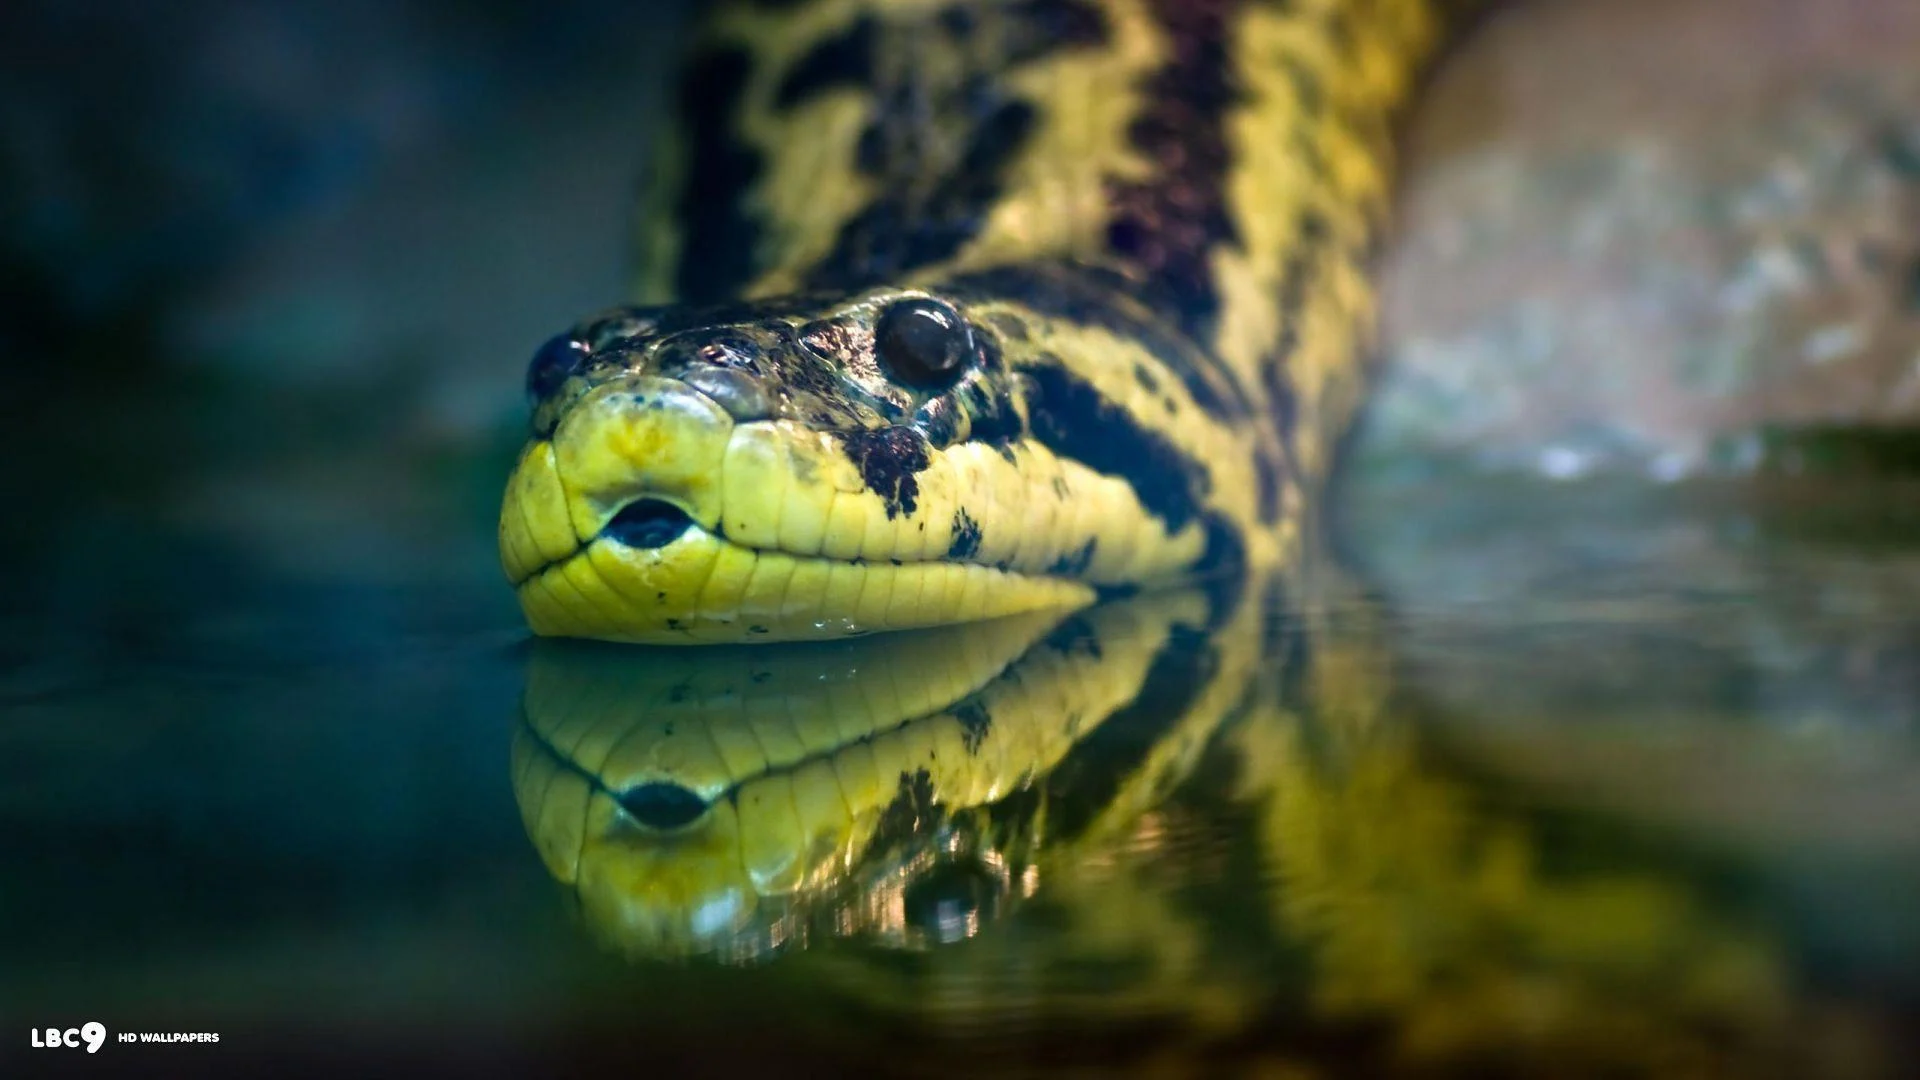 Die 5 größten Schlangen und Schlangen der Welt